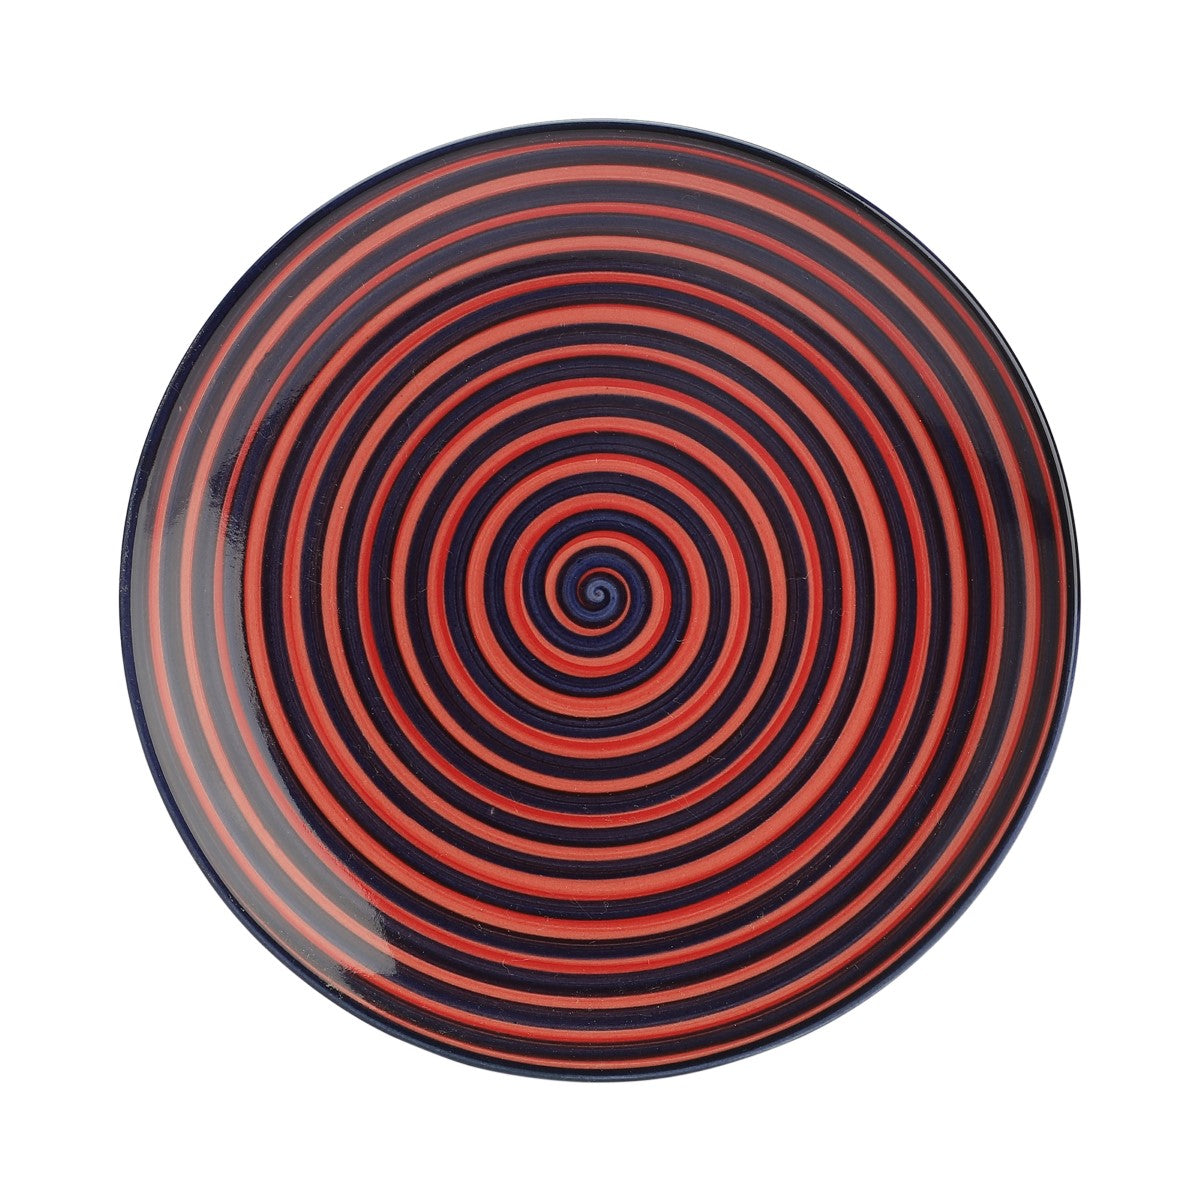 Spiral Ceramic Quarter Plates (Set of 4)